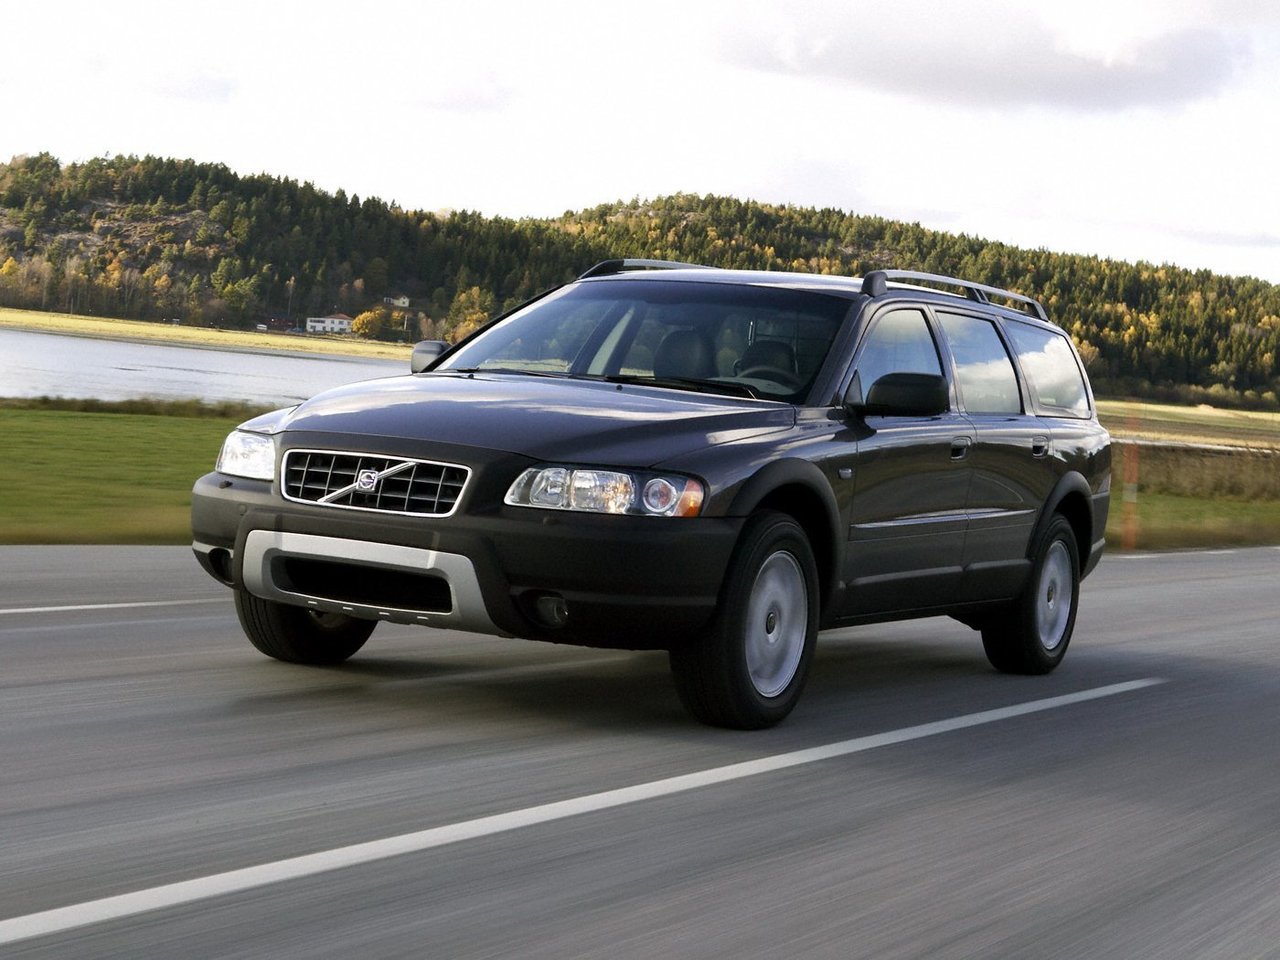 Расход газа двух комплектаций универсала пять дверей Volvo XC70. Разница стоимости заправки газом и бензином. Автономный пробег до и после установки ГБО.